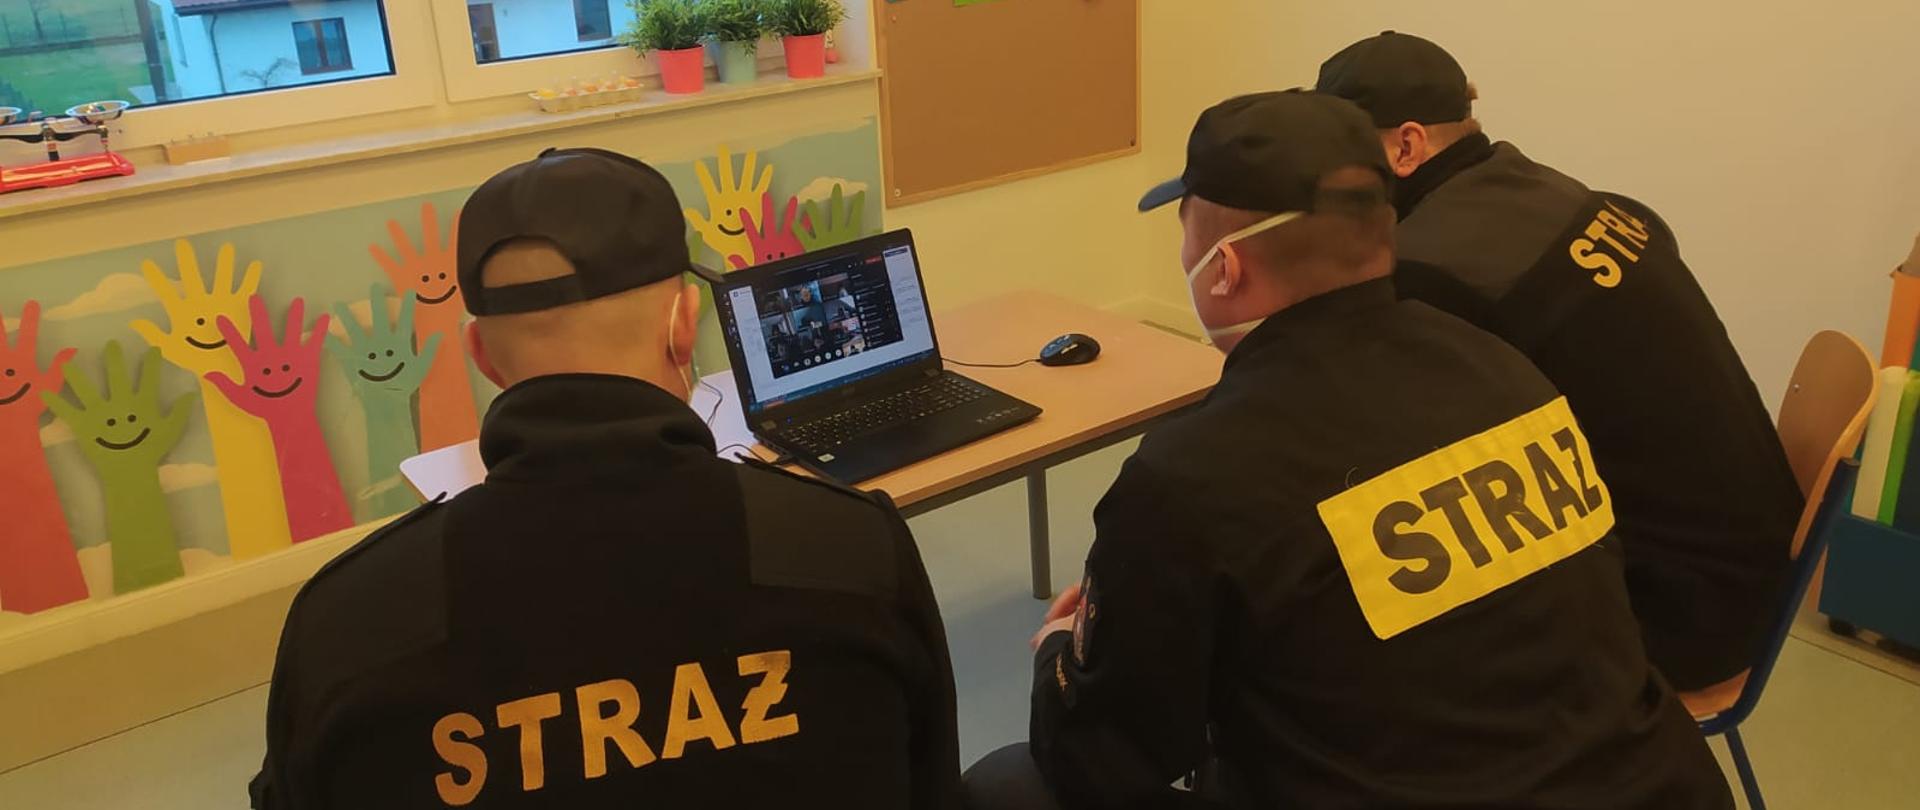 Strażacy prowadzą zajęcia dla dzieci korzystając z komputera w formie wideokonferencji.